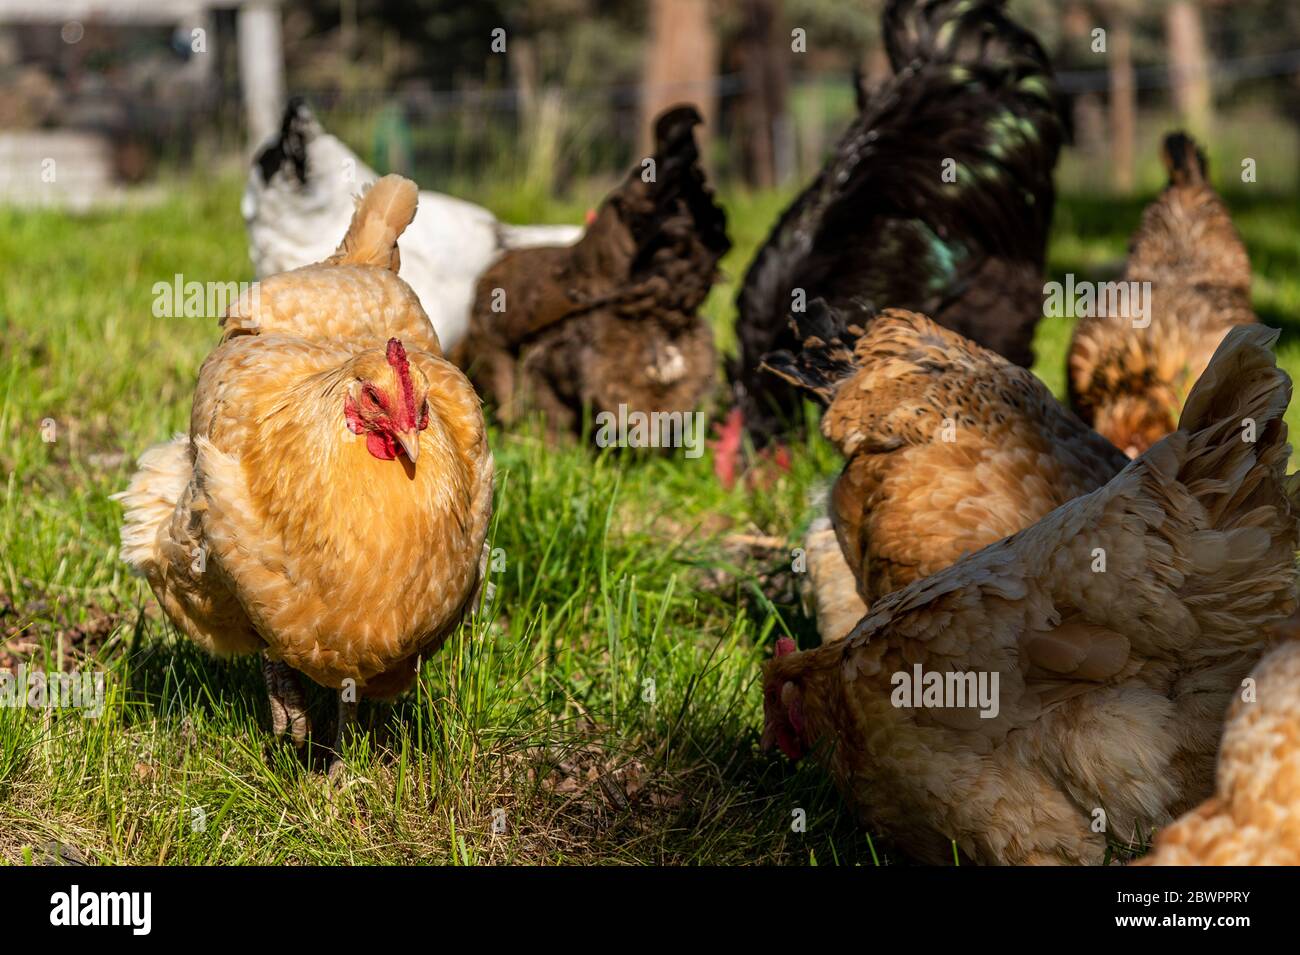 Diverses couleurs et races de poulets se nourrissant ensemble dans un champ vert luxuriant Banque D'Images